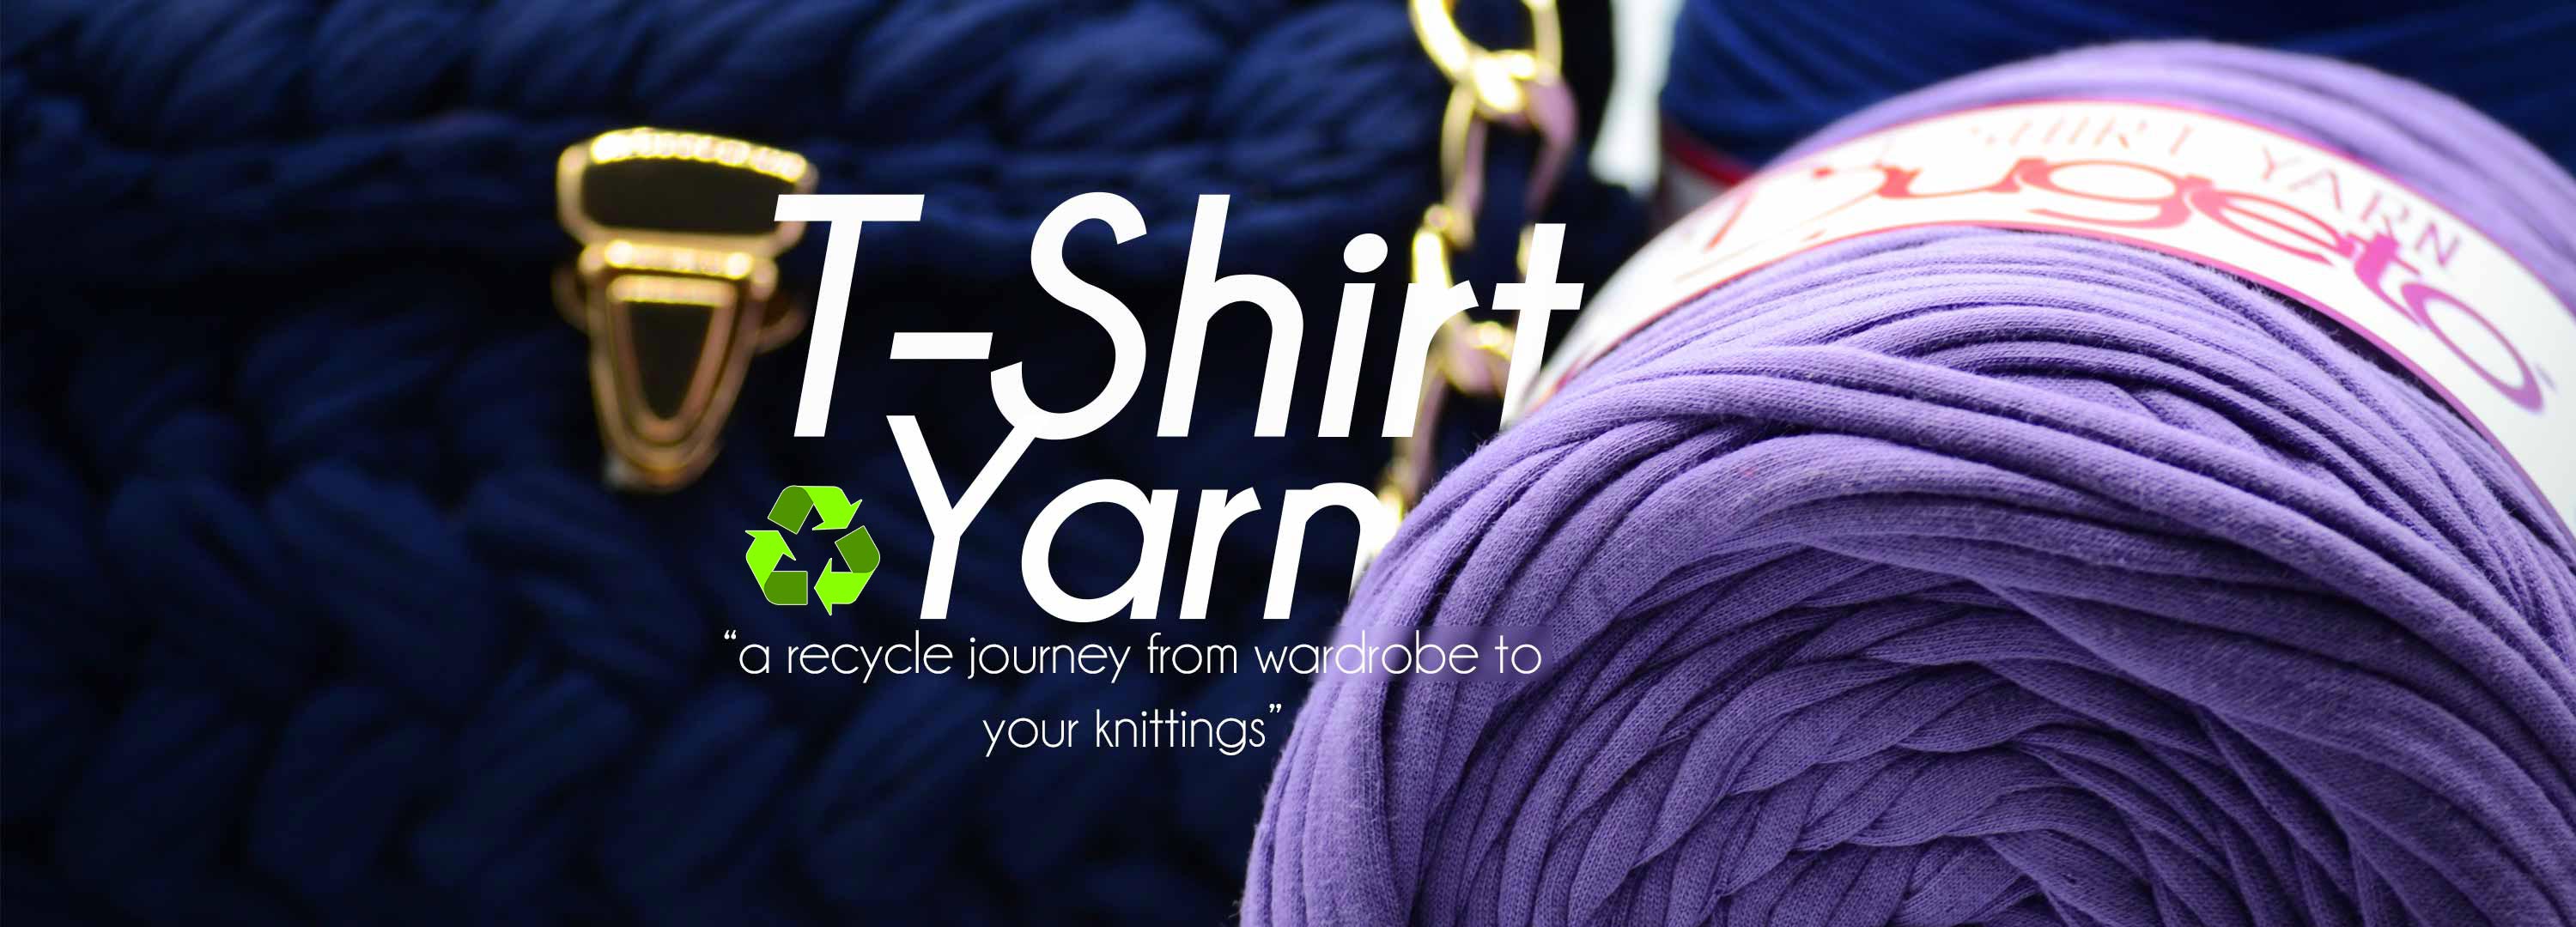 tshirt yarns recycled yarn colorfull yarns tshirt yarn bugeto yarn